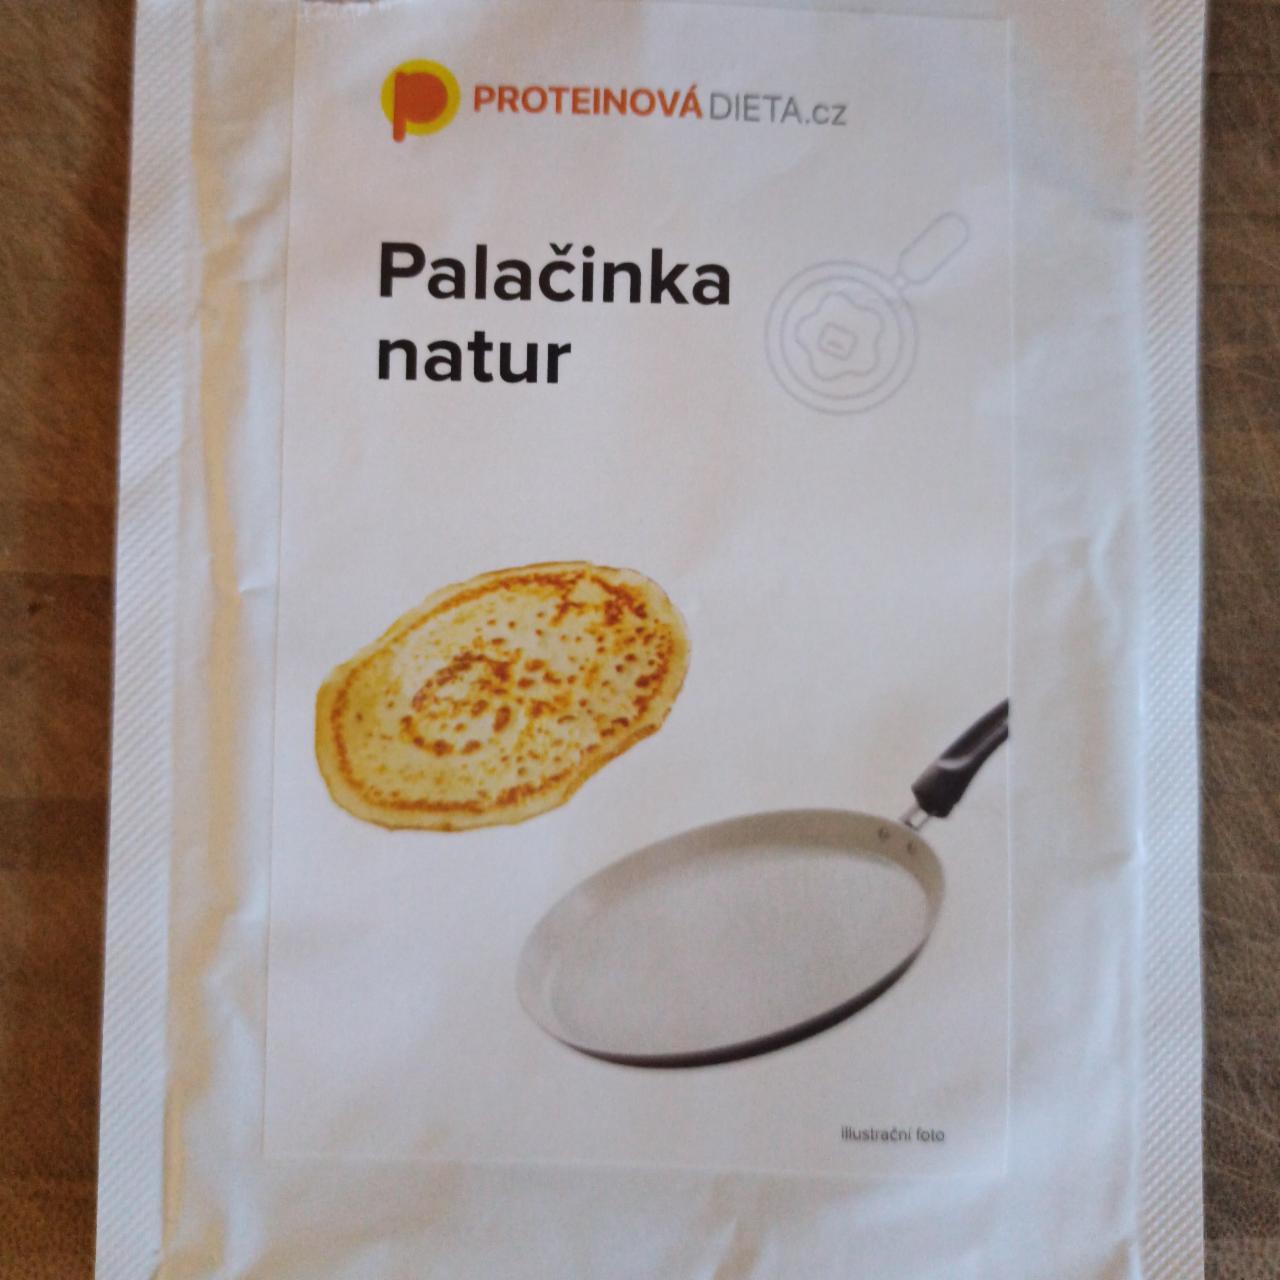 Fotografie - Palačinka natur Proteinovadieta.cz